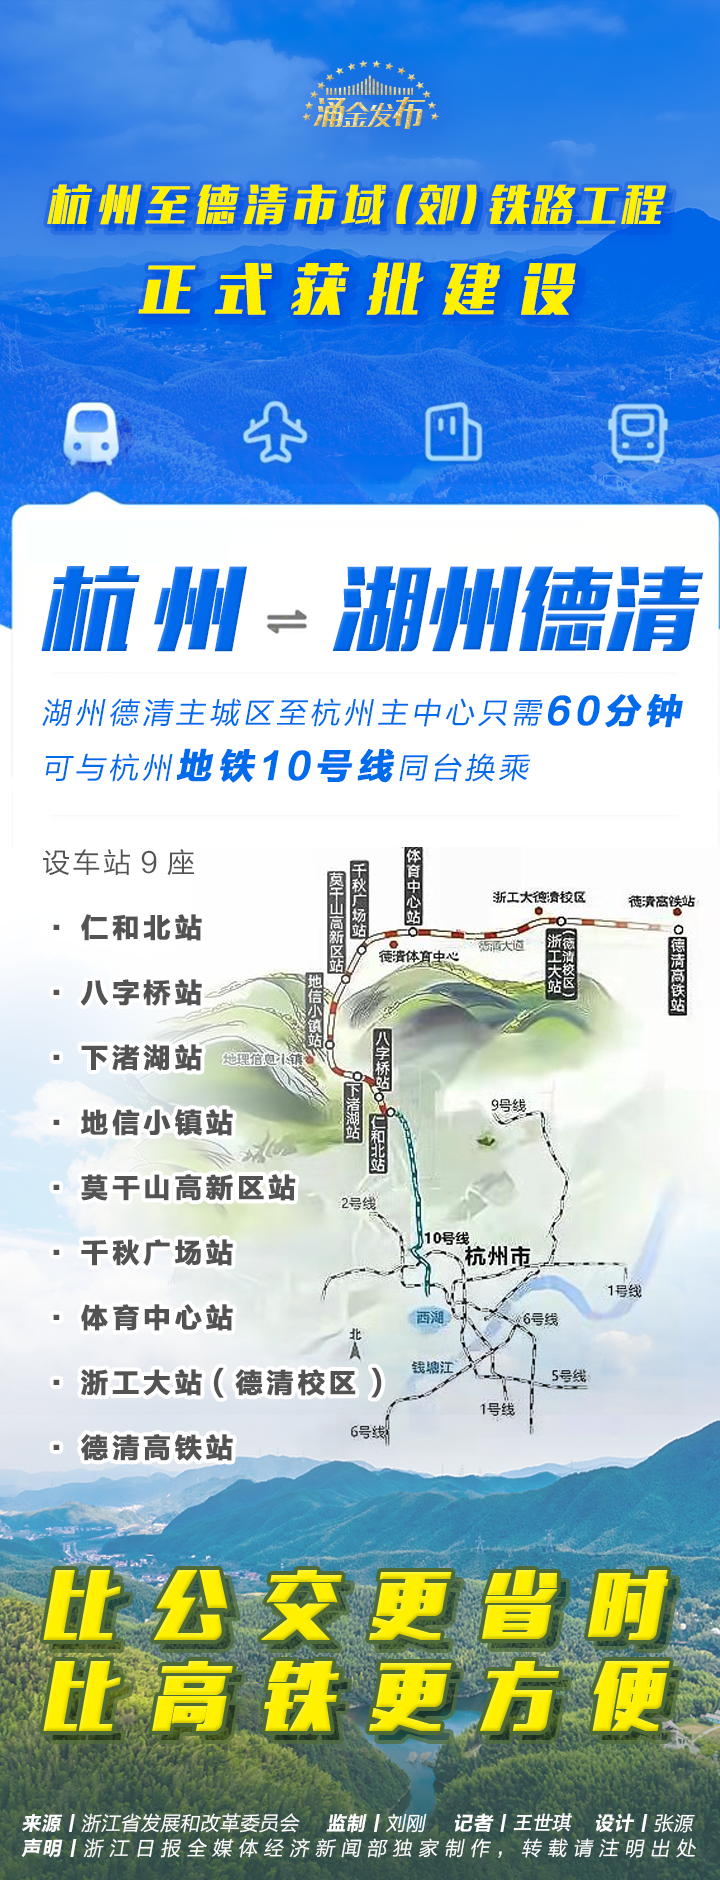 杭州至德清市域郊铁路正式获批建设9个站点在这里